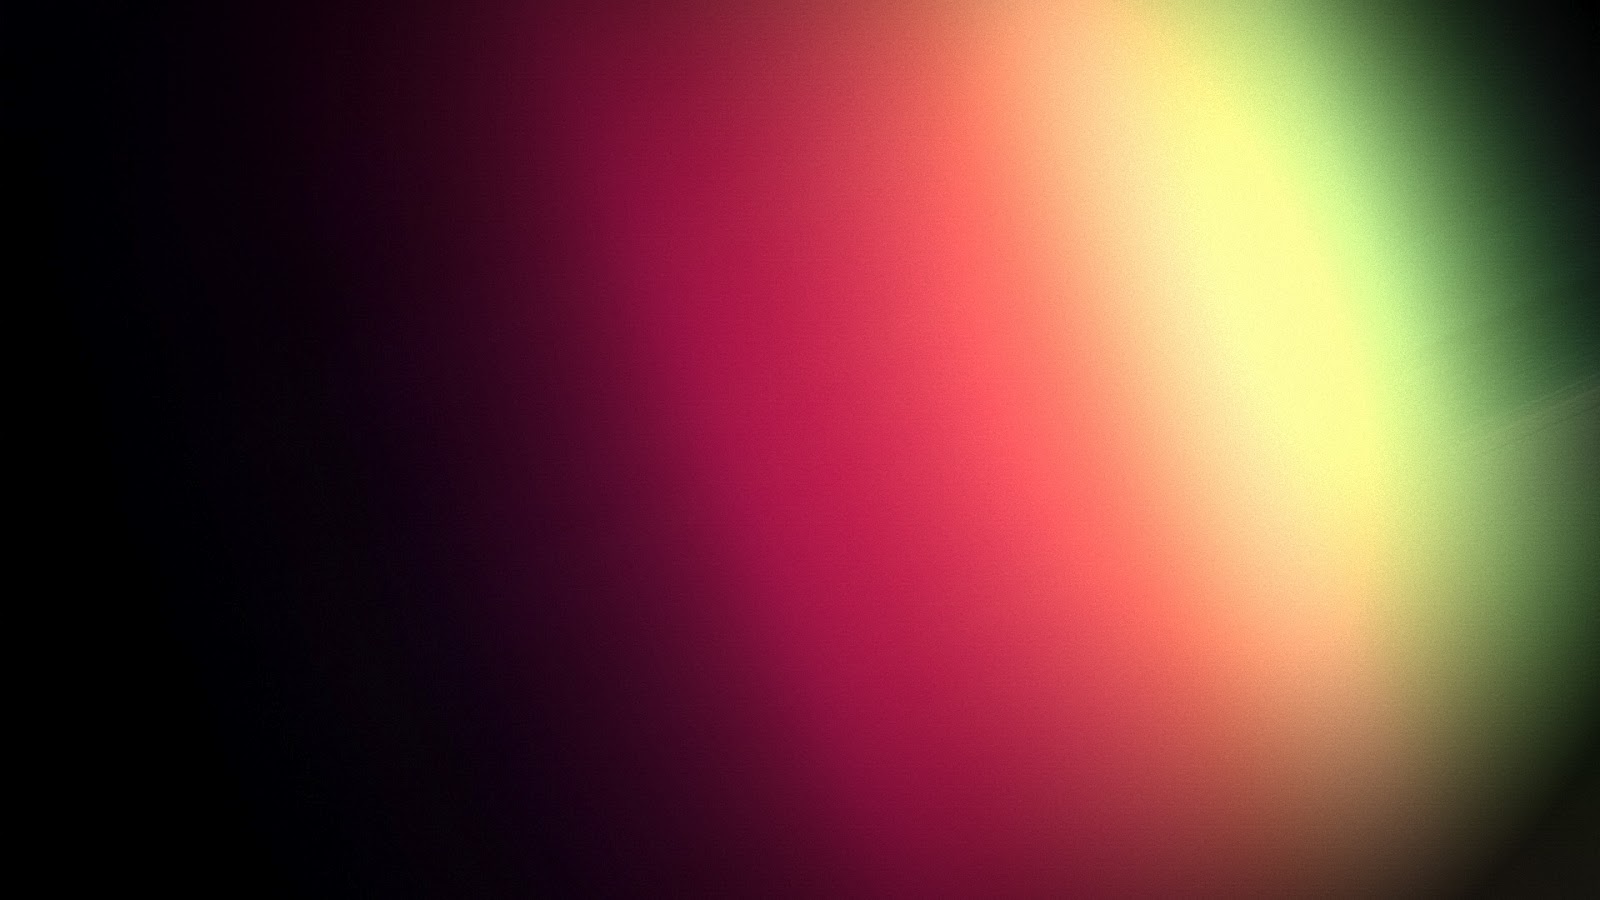 Spectrum Abstract HD Wallpaper 1080p Dock